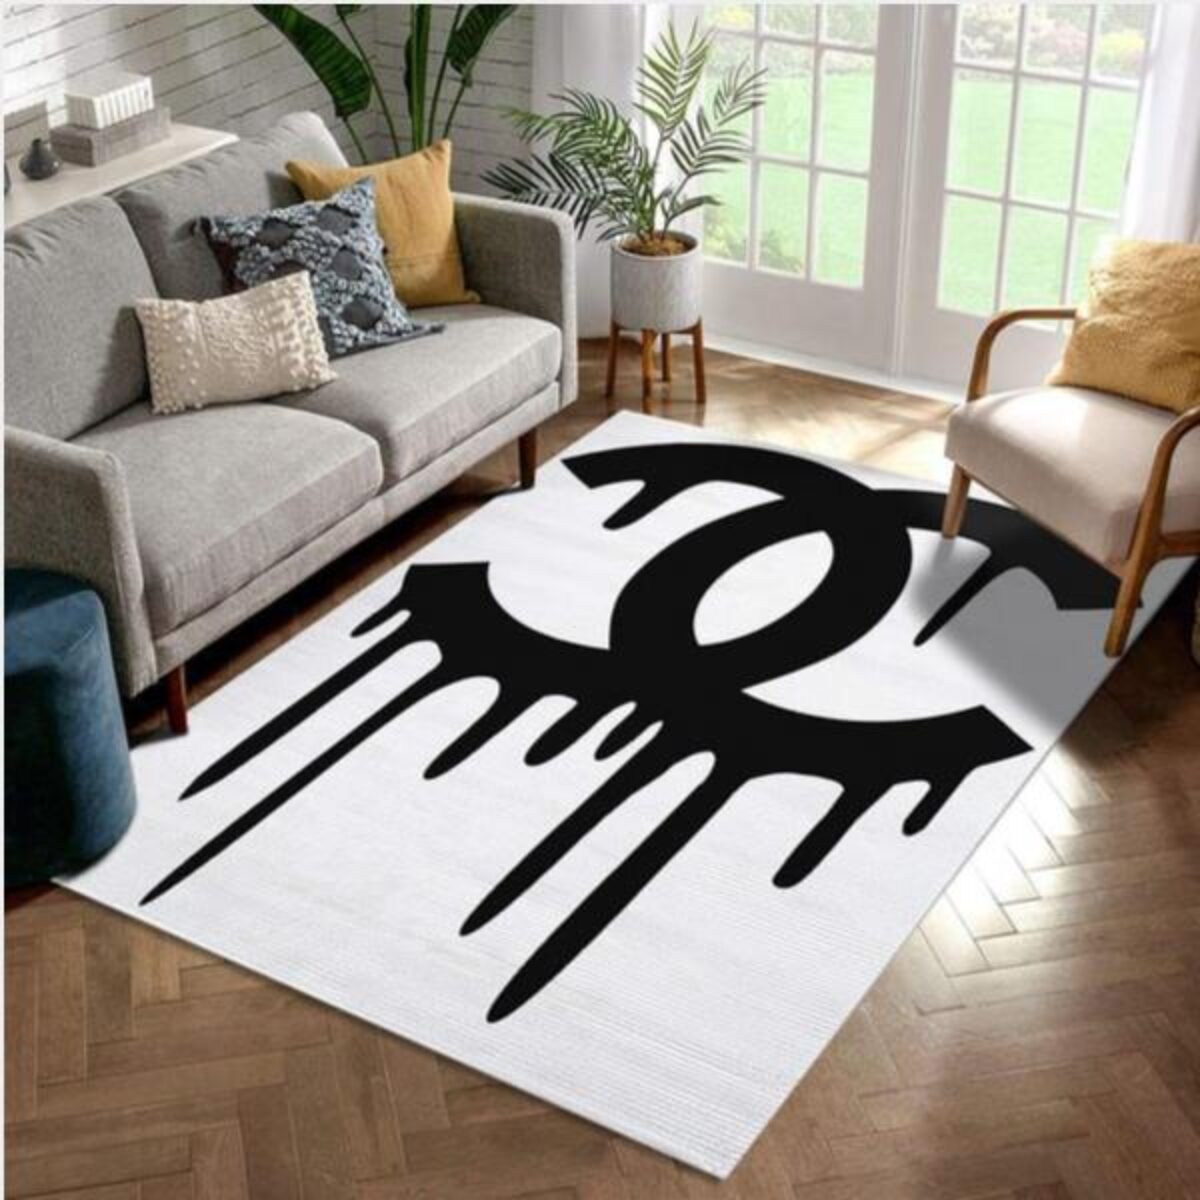 Chanel Inspired Rugs Black & White Hypebeast Living Room Carpet